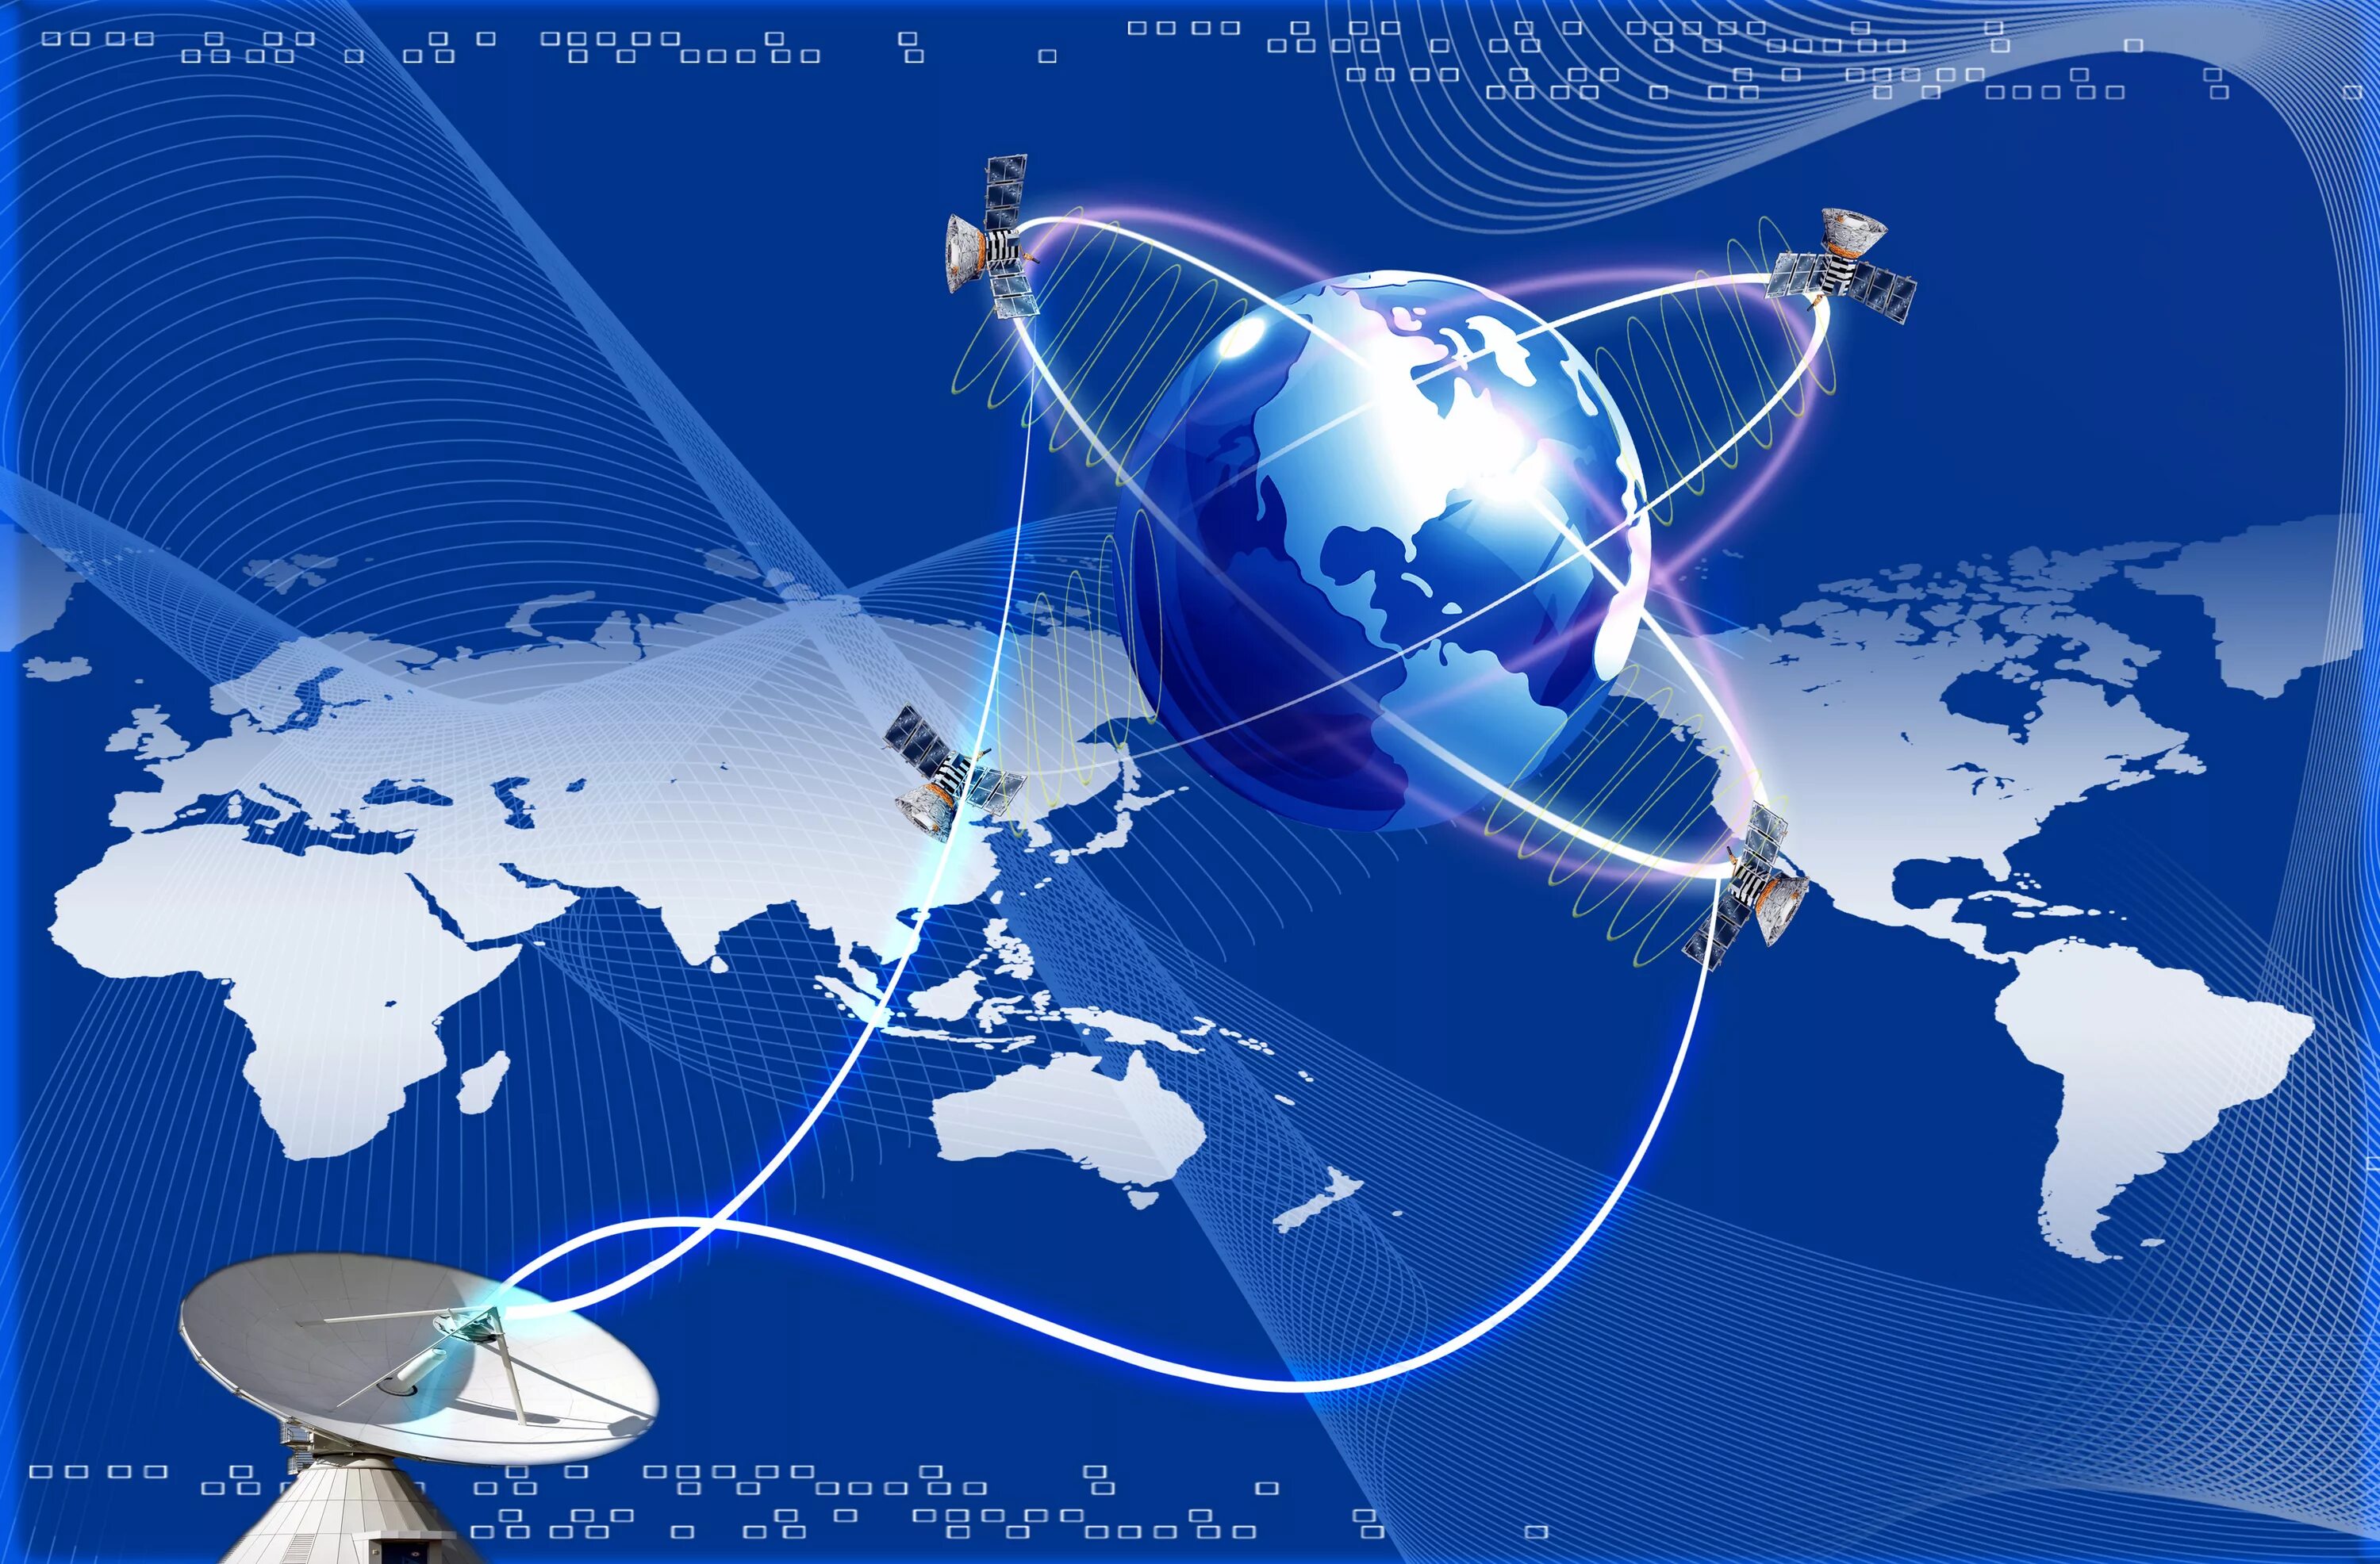 Мировая система связи. Спутниковая связь. Сотовая и спутниковая связь. Сеть спутниковой связи. Космические технологии и телекоммуникации.